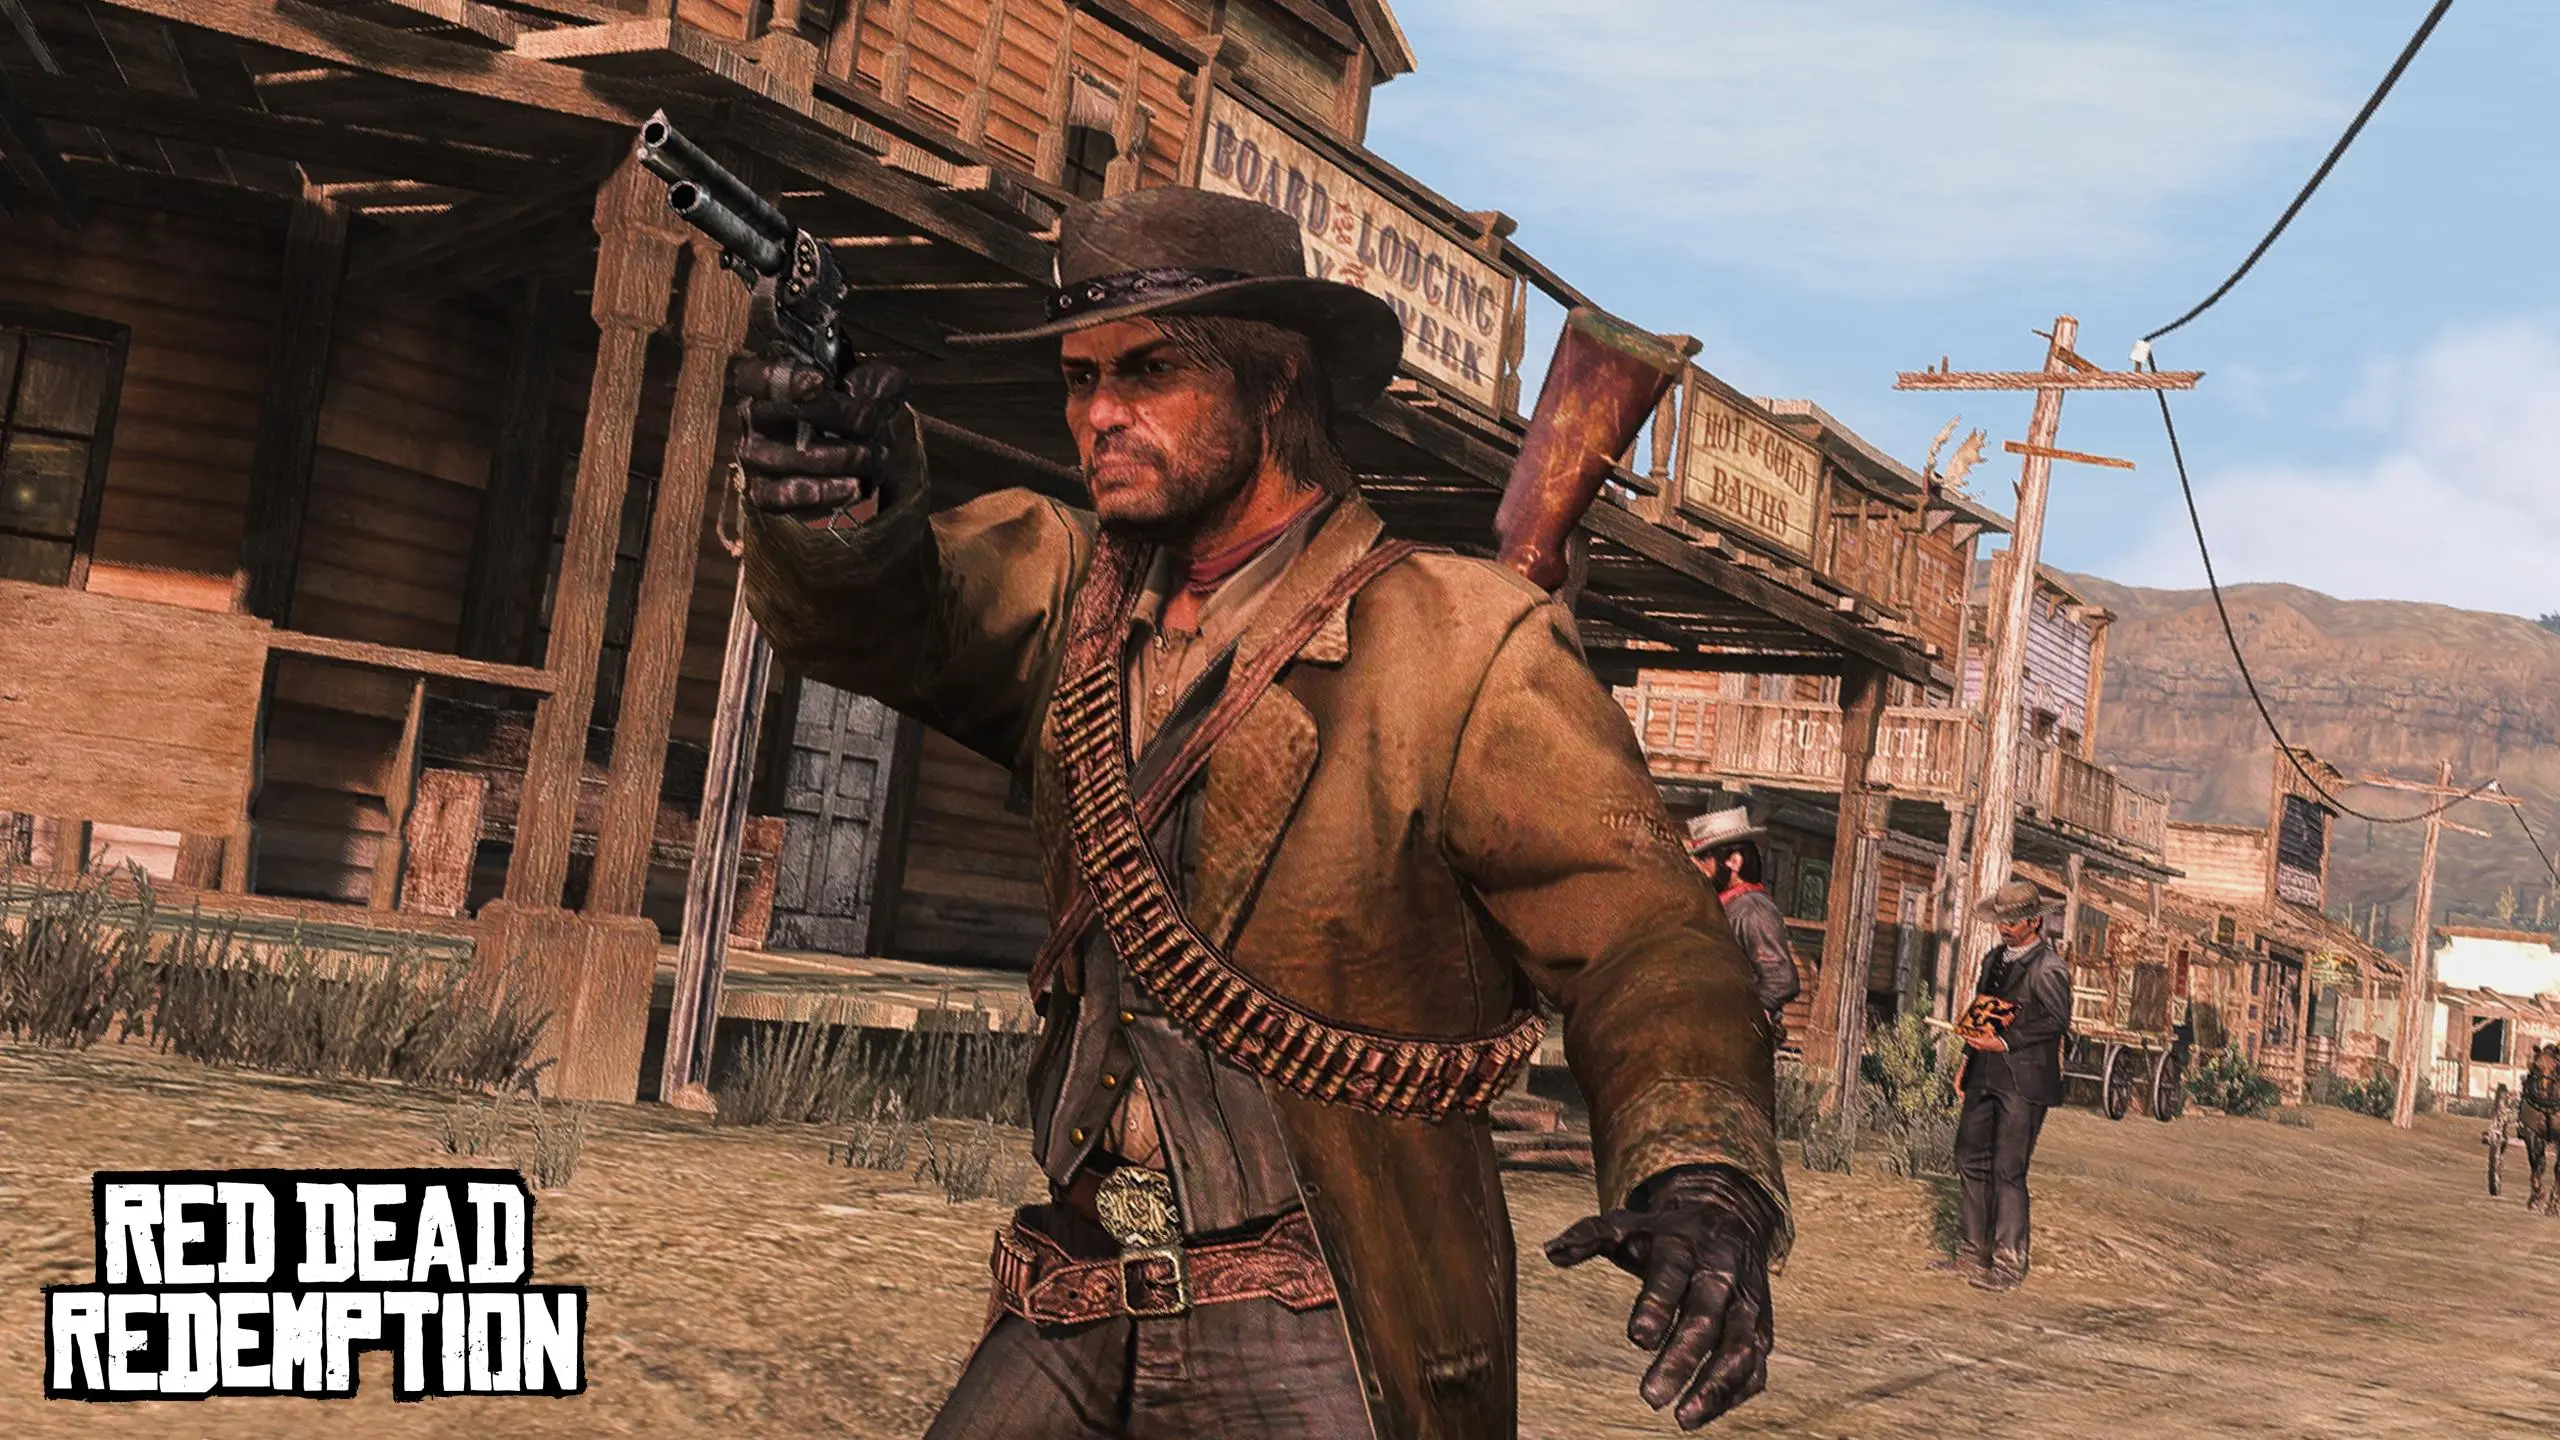 Red Dead Redemption 1 remaster underway at Rockstar claims rumour